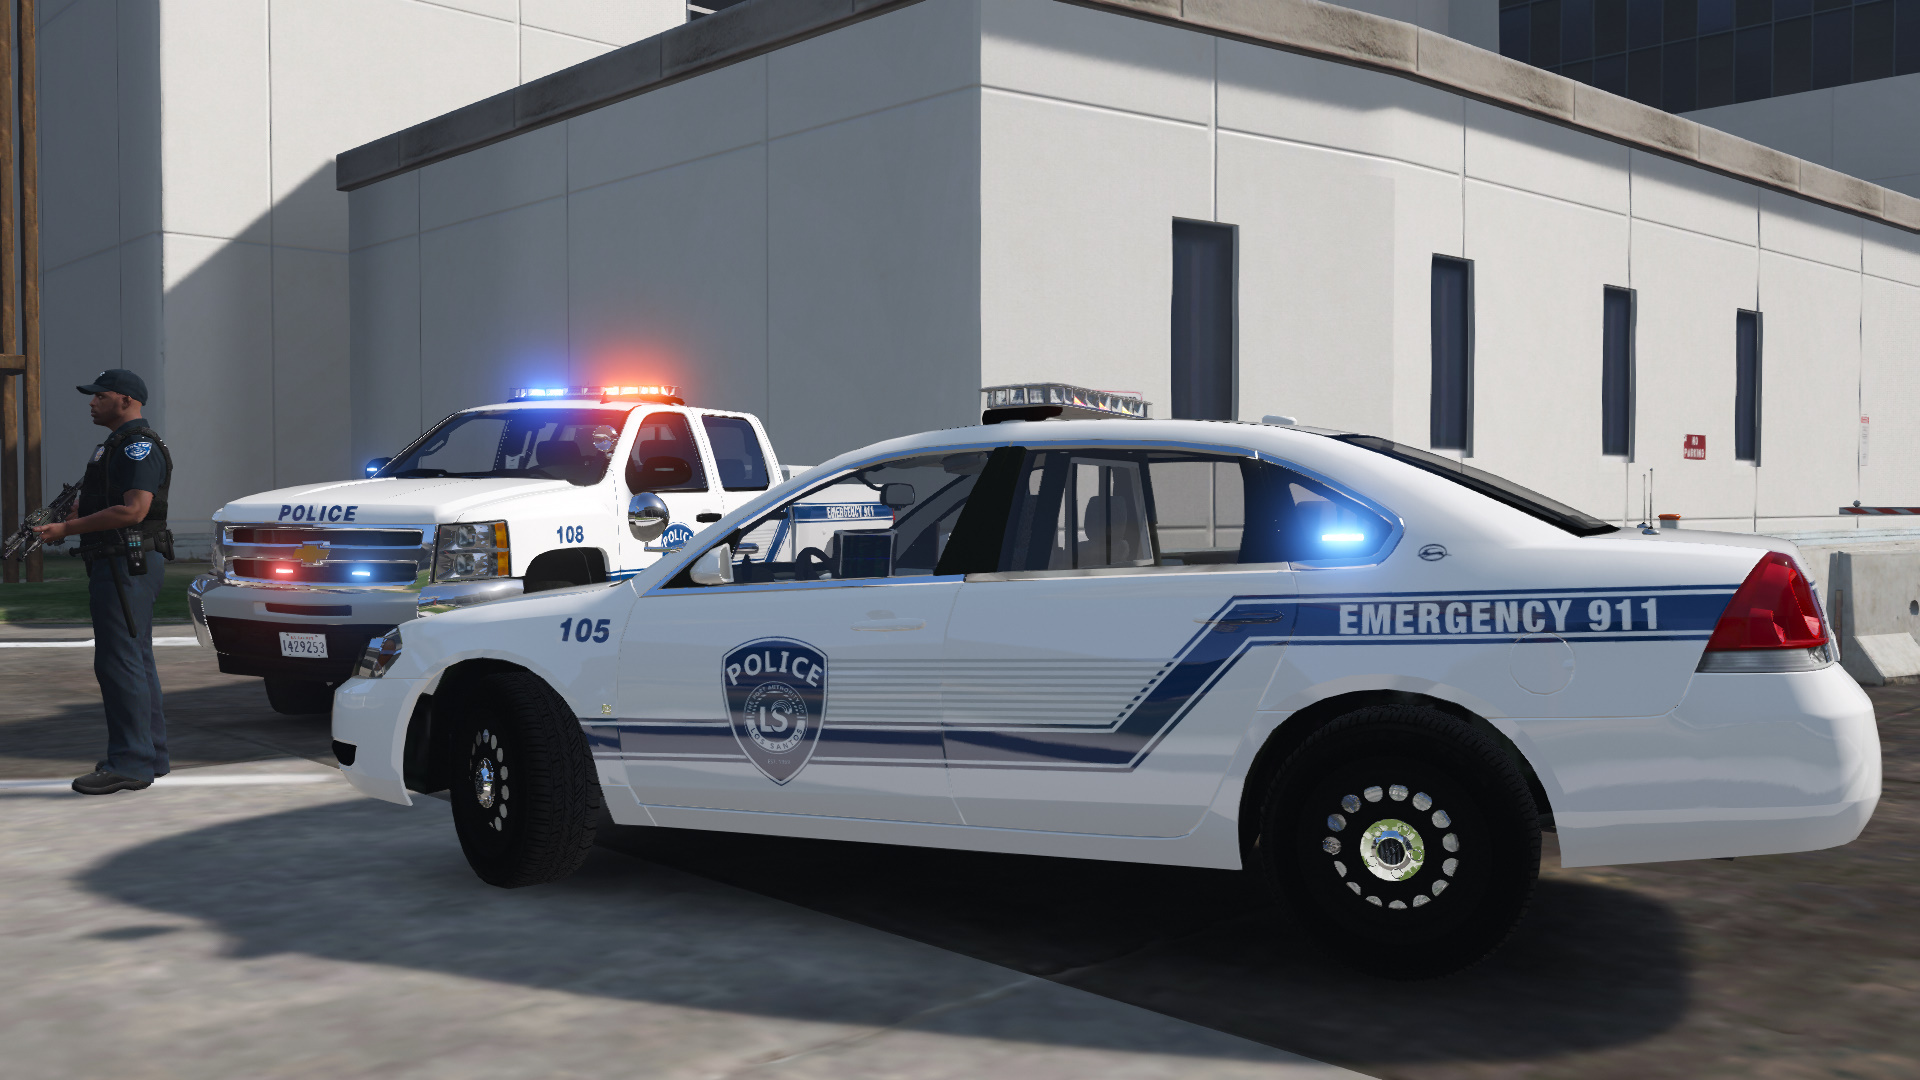 Пак полицейских машин. Портовая полиция Лос Анджелеса. Полиция Лос Анджелеса 911. LSPD GTA 5. Police car Pack GTA 5.